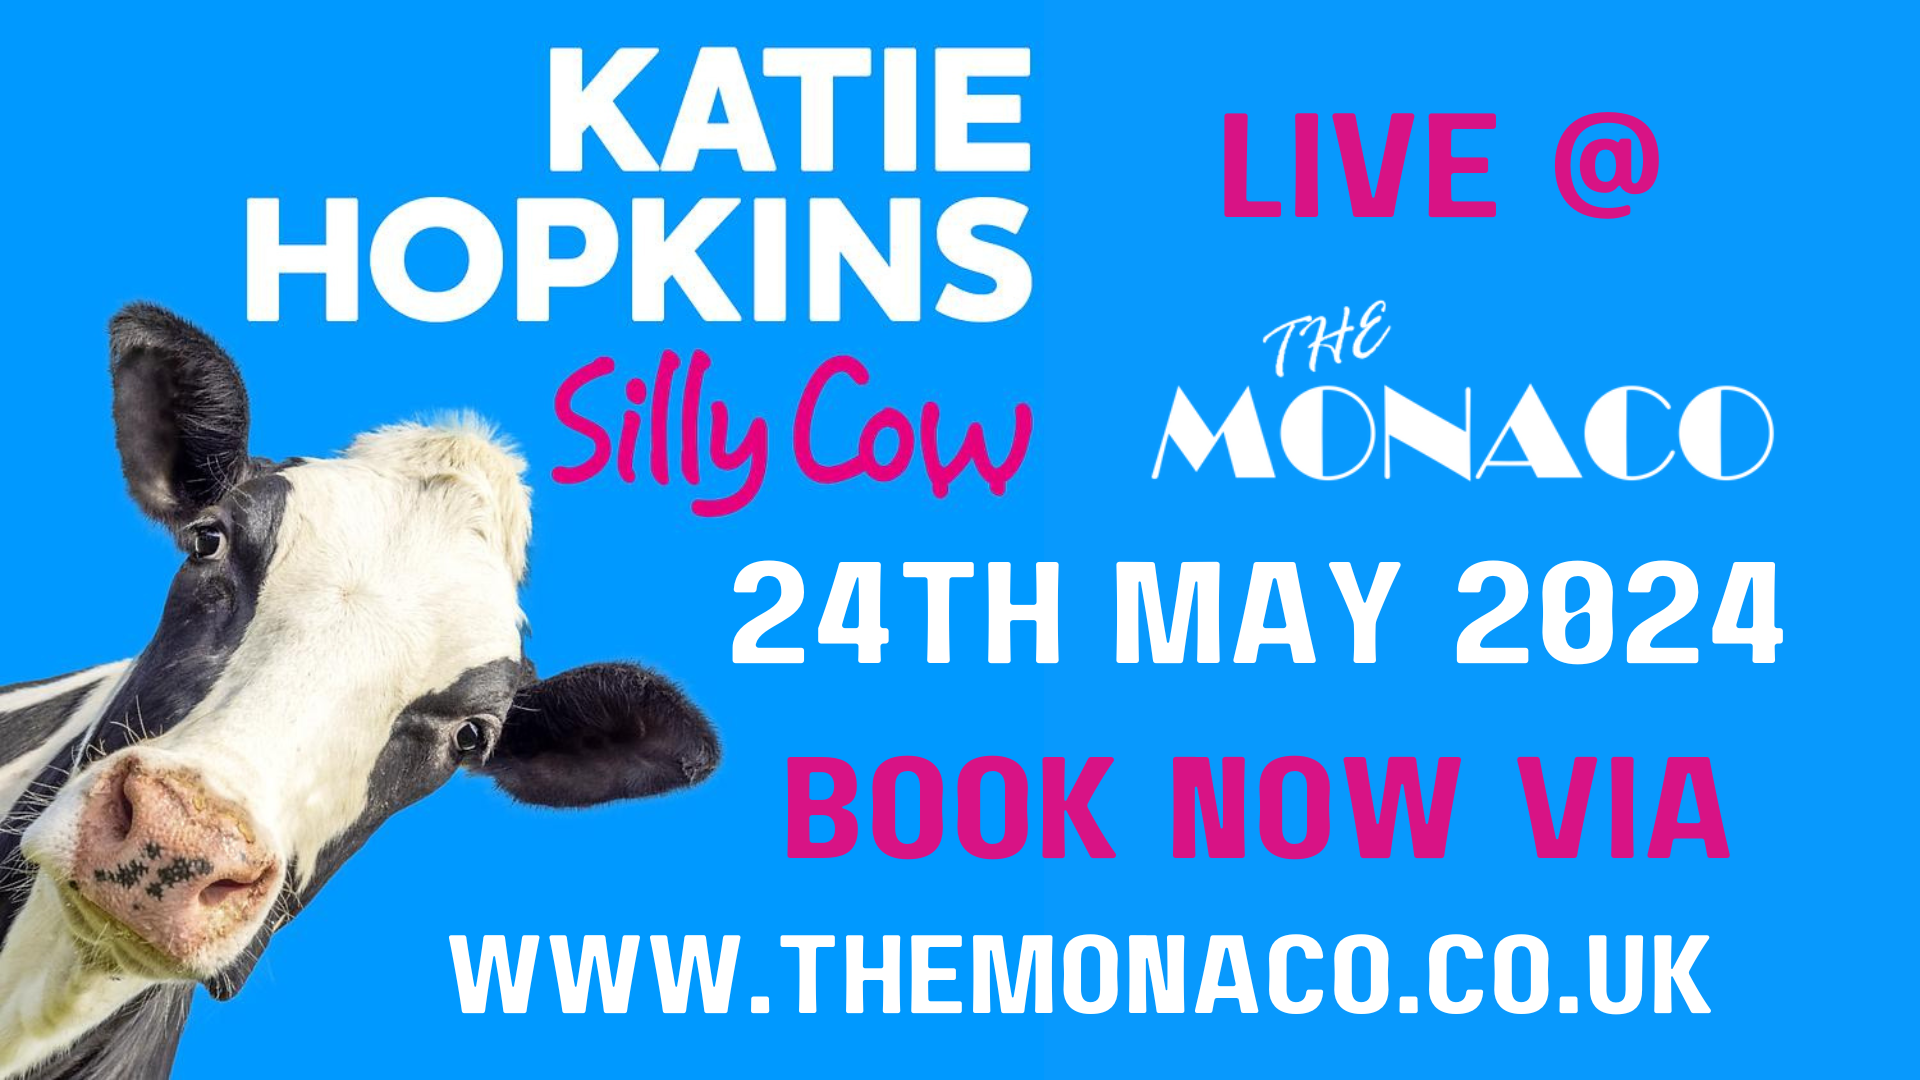 Katie Hopkins Live at The Monaco